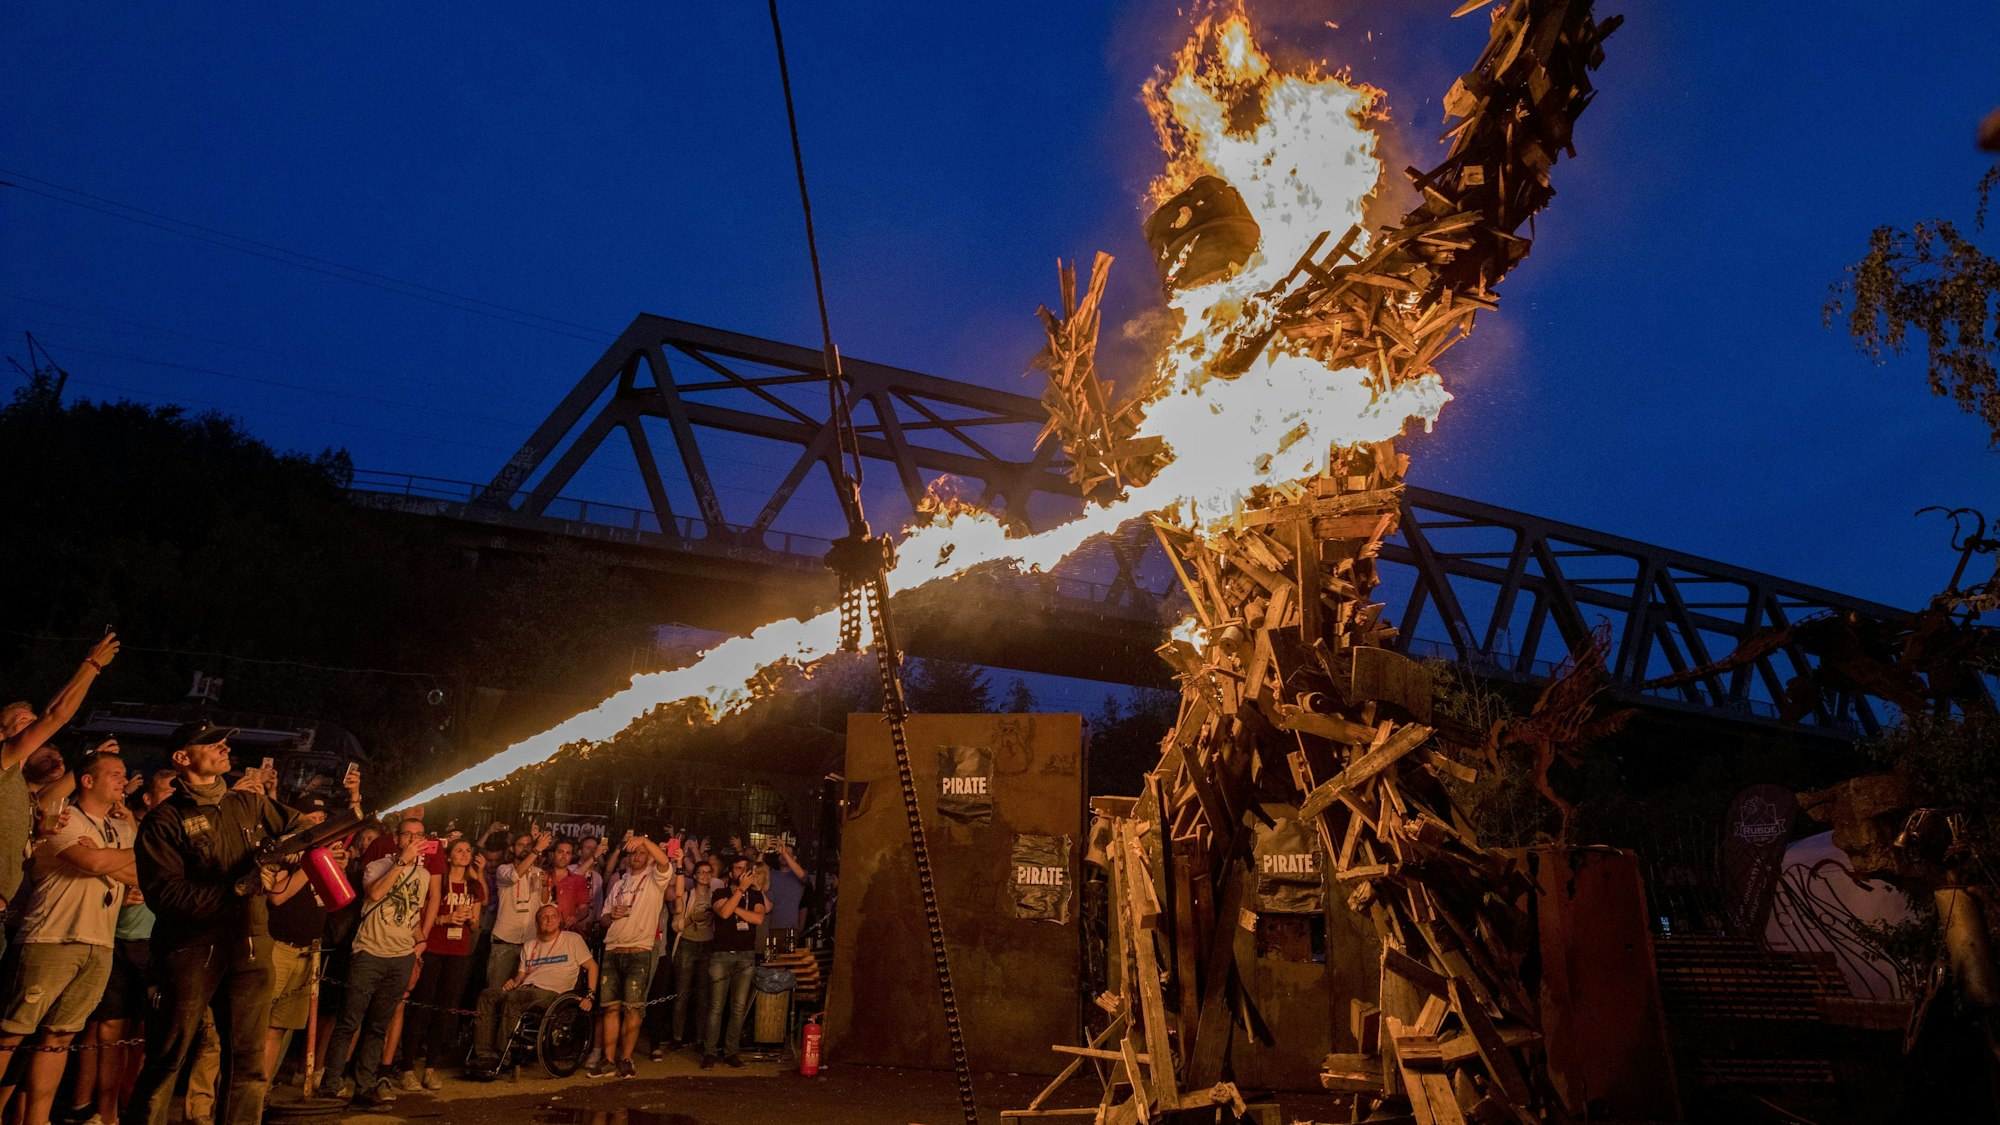 Beim Pirate Summit wird während einer großen Party ein mehrere Meter hoher Holzpirat verbrannt.